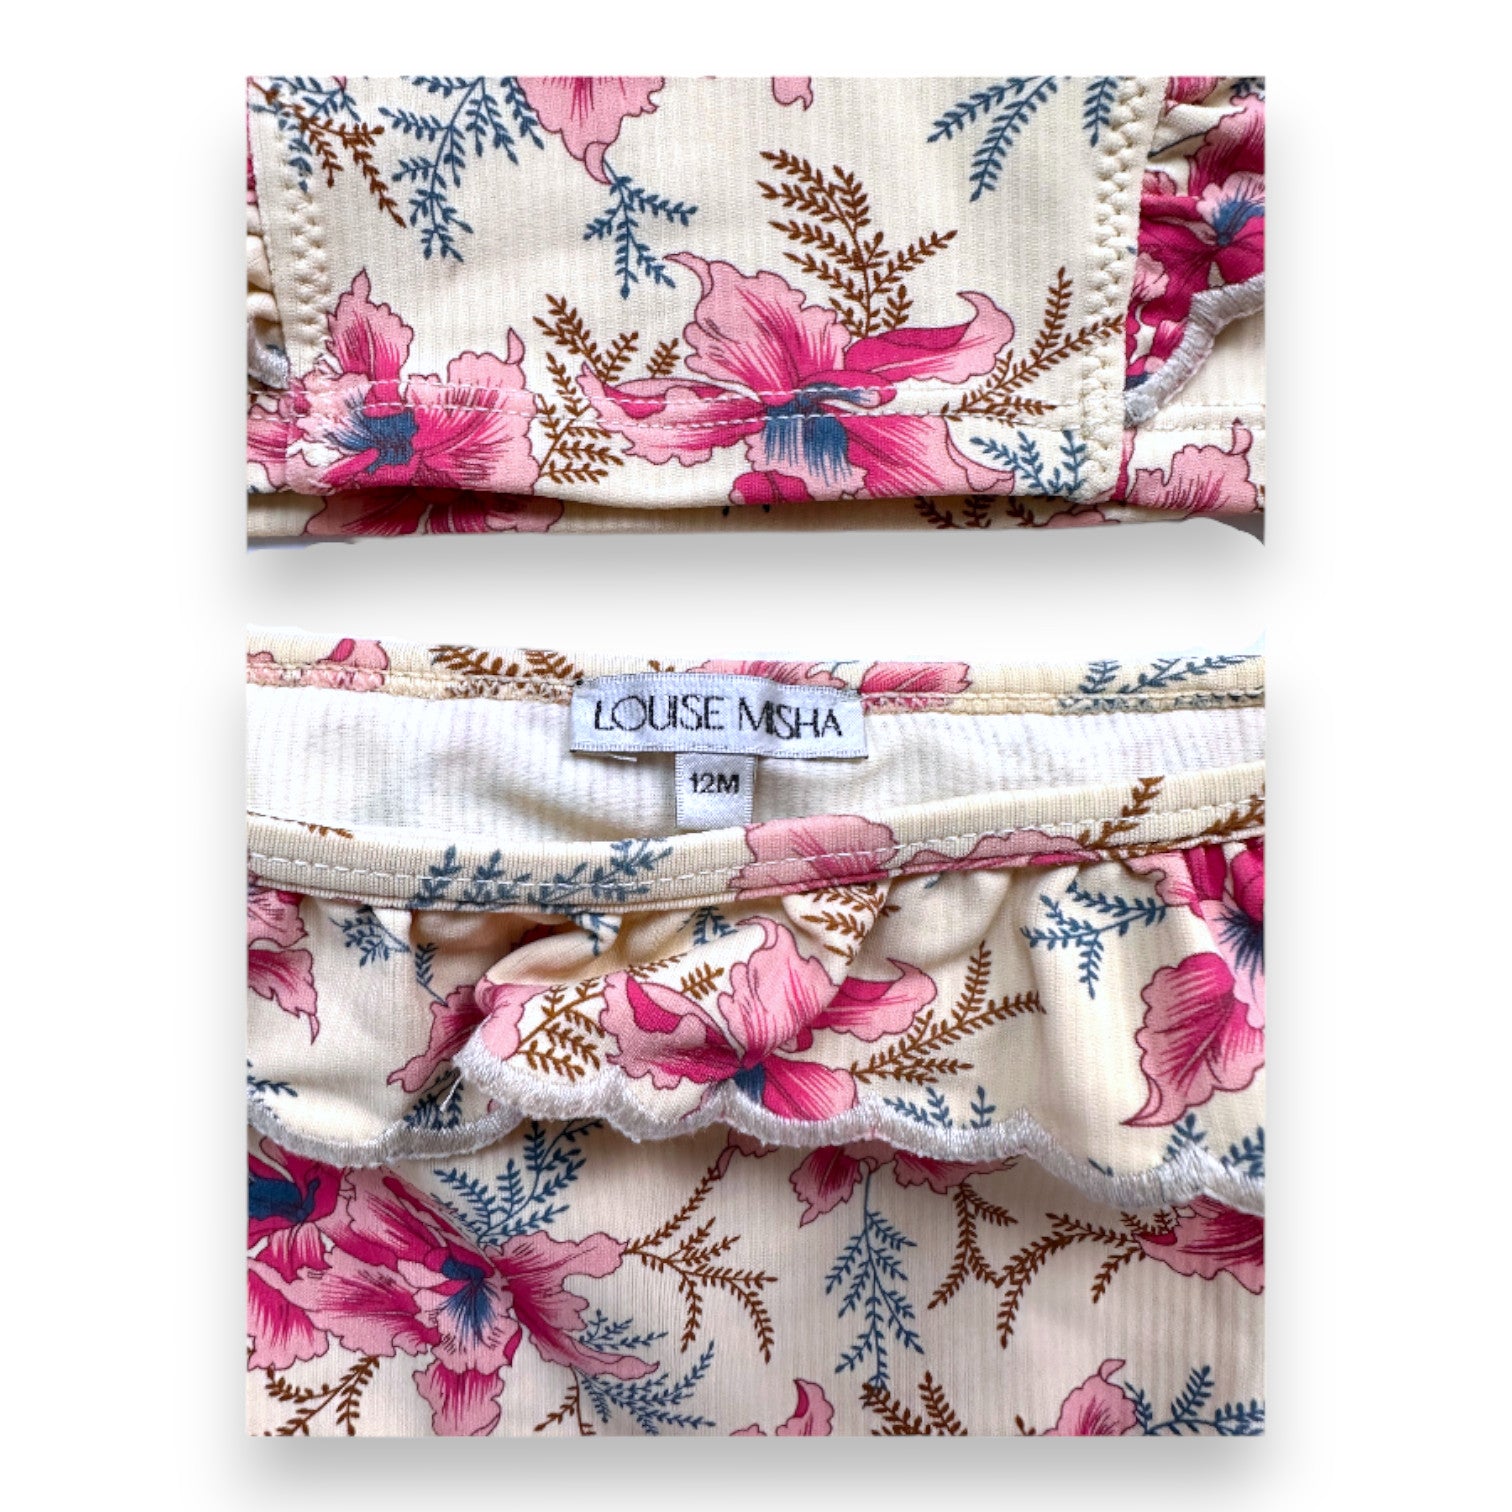 LOUISE MISHA - ensemble de maillot de bain beige à fleurs roses - 12 mois